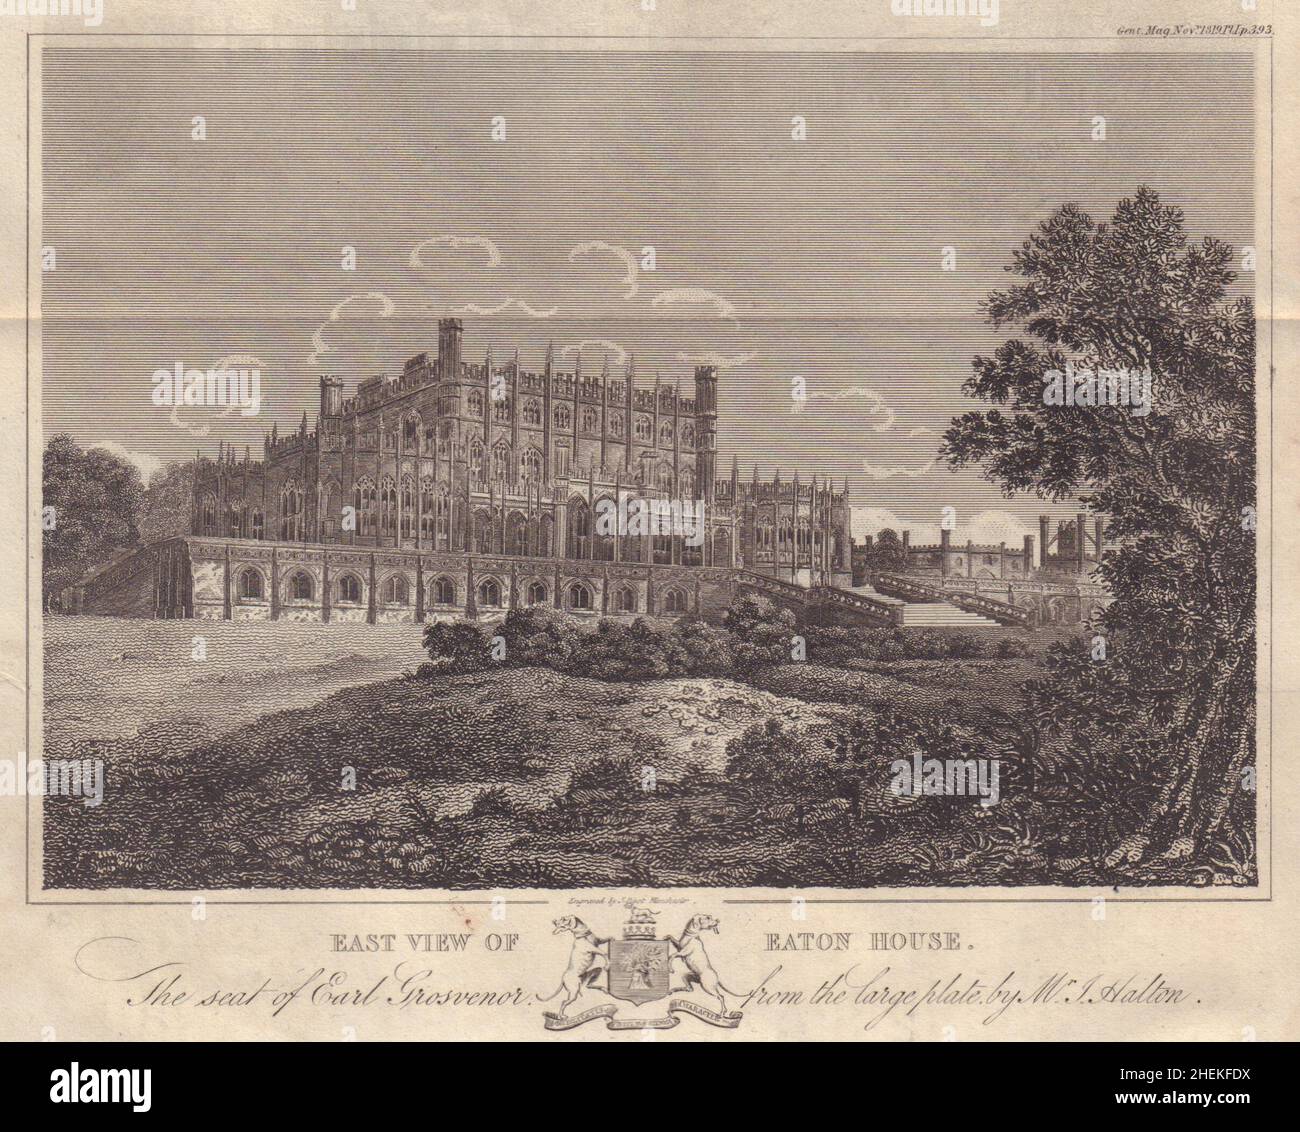 Vue est de la Maison Eaton, siège du comte Grosvenor, par M. J. Halton, Cheshire 1819 Banque D'Images